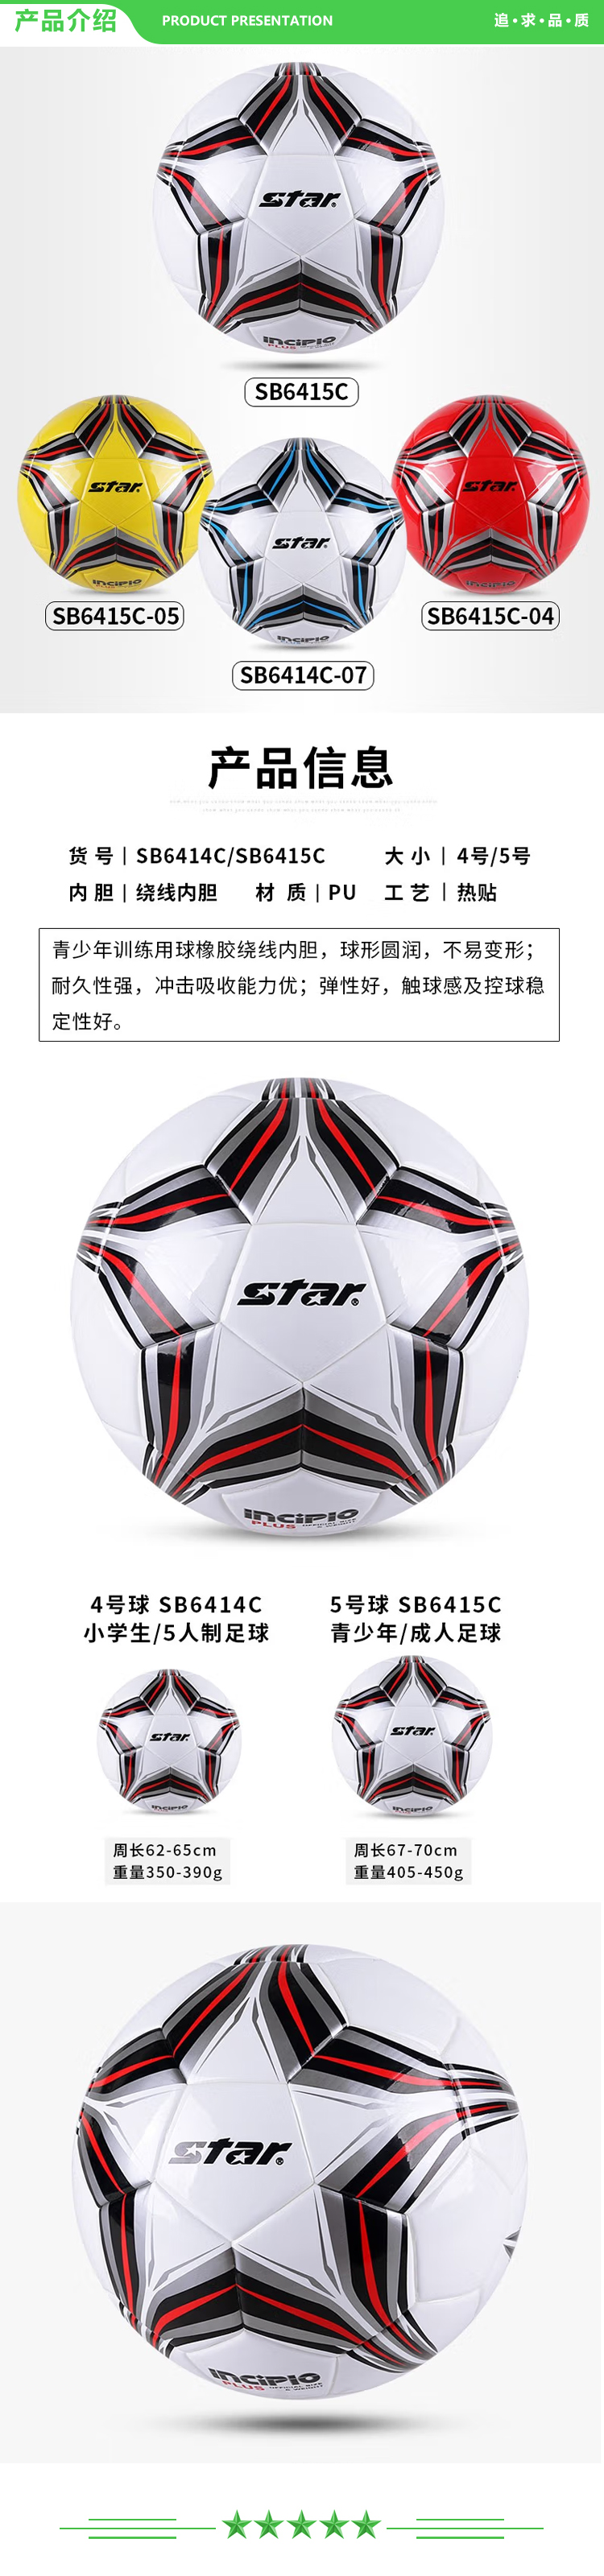 世达 star SB6414（4号小学生 5人制场地使用）足球 4号中学生儿童青少年训练比赛用球稳定耐磨.jpg